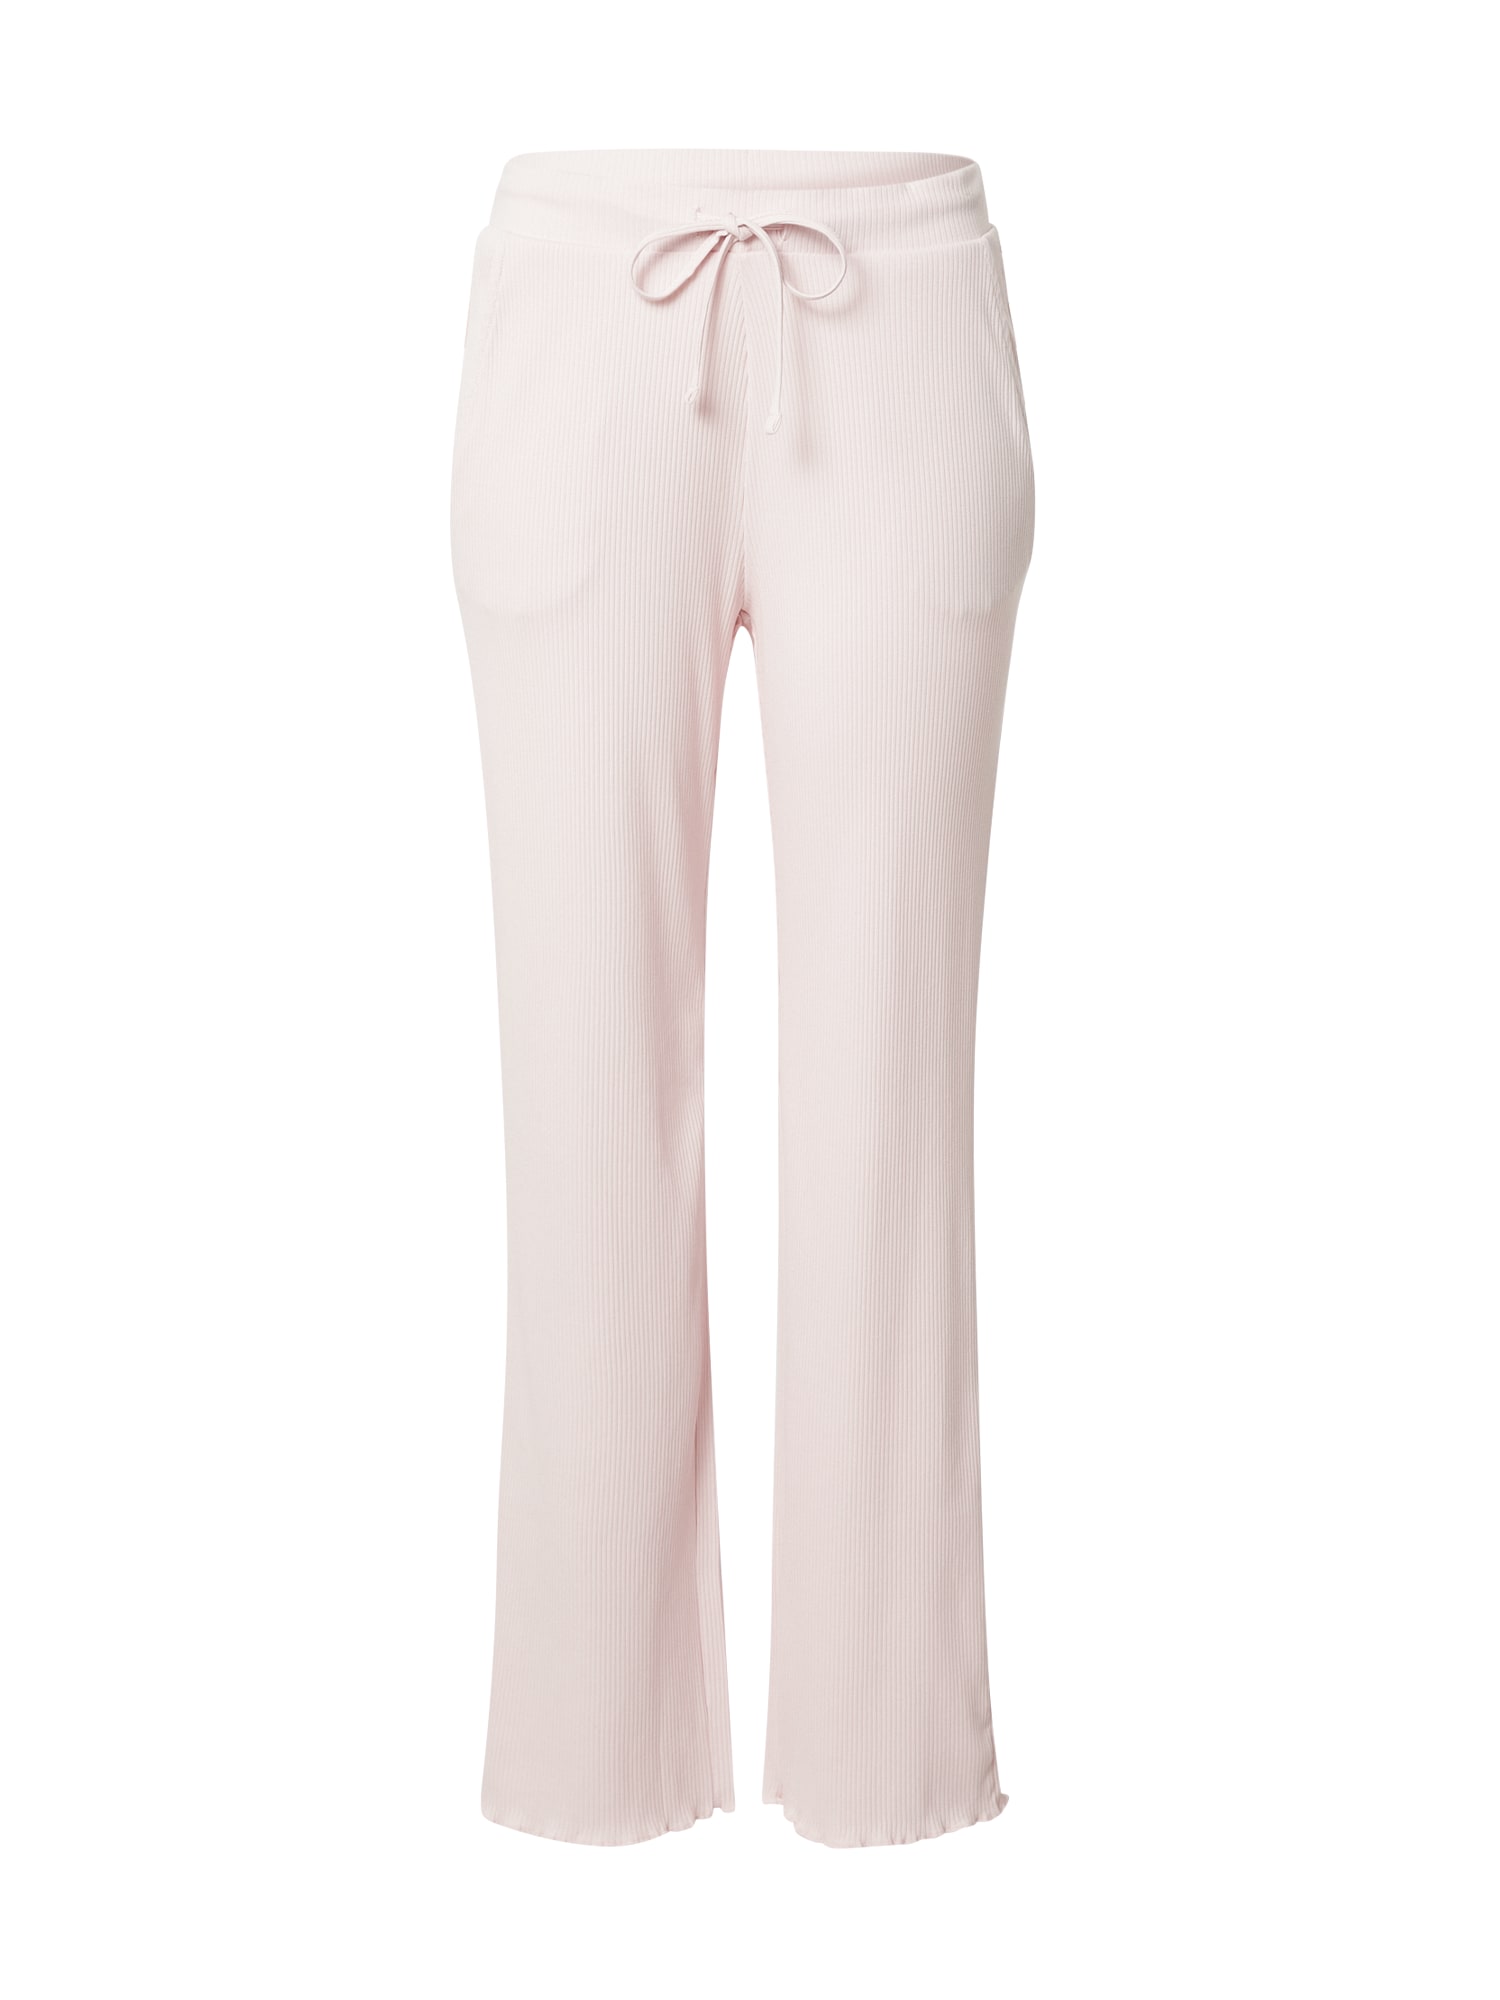 ESPRIT Pizsama nadrágok  pasztell-rózsaszín